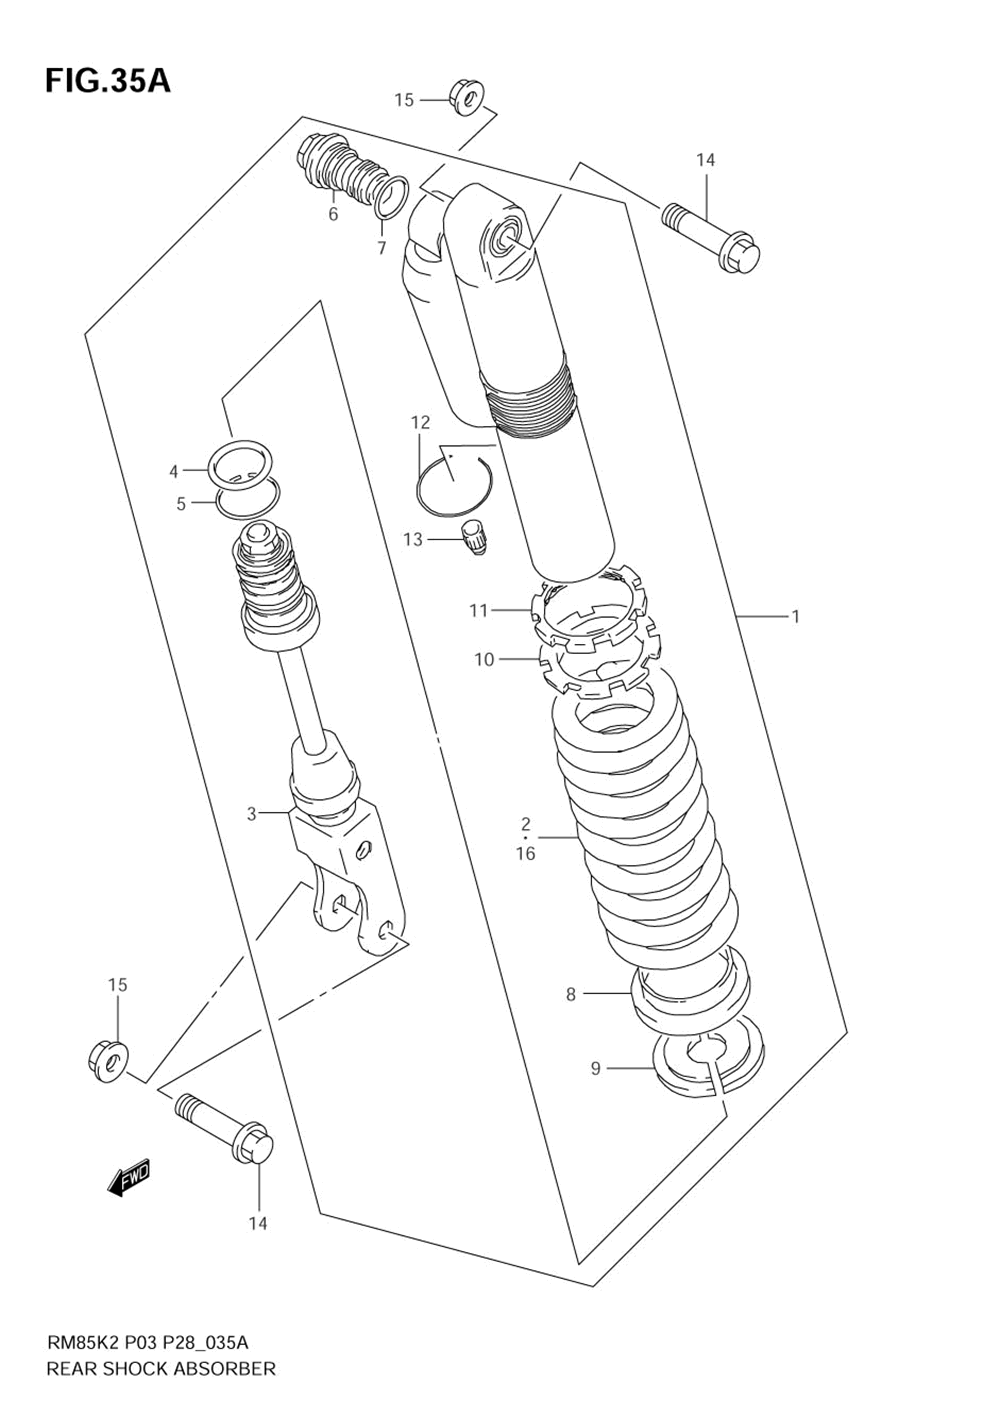 Rear shock absorber (model k4)